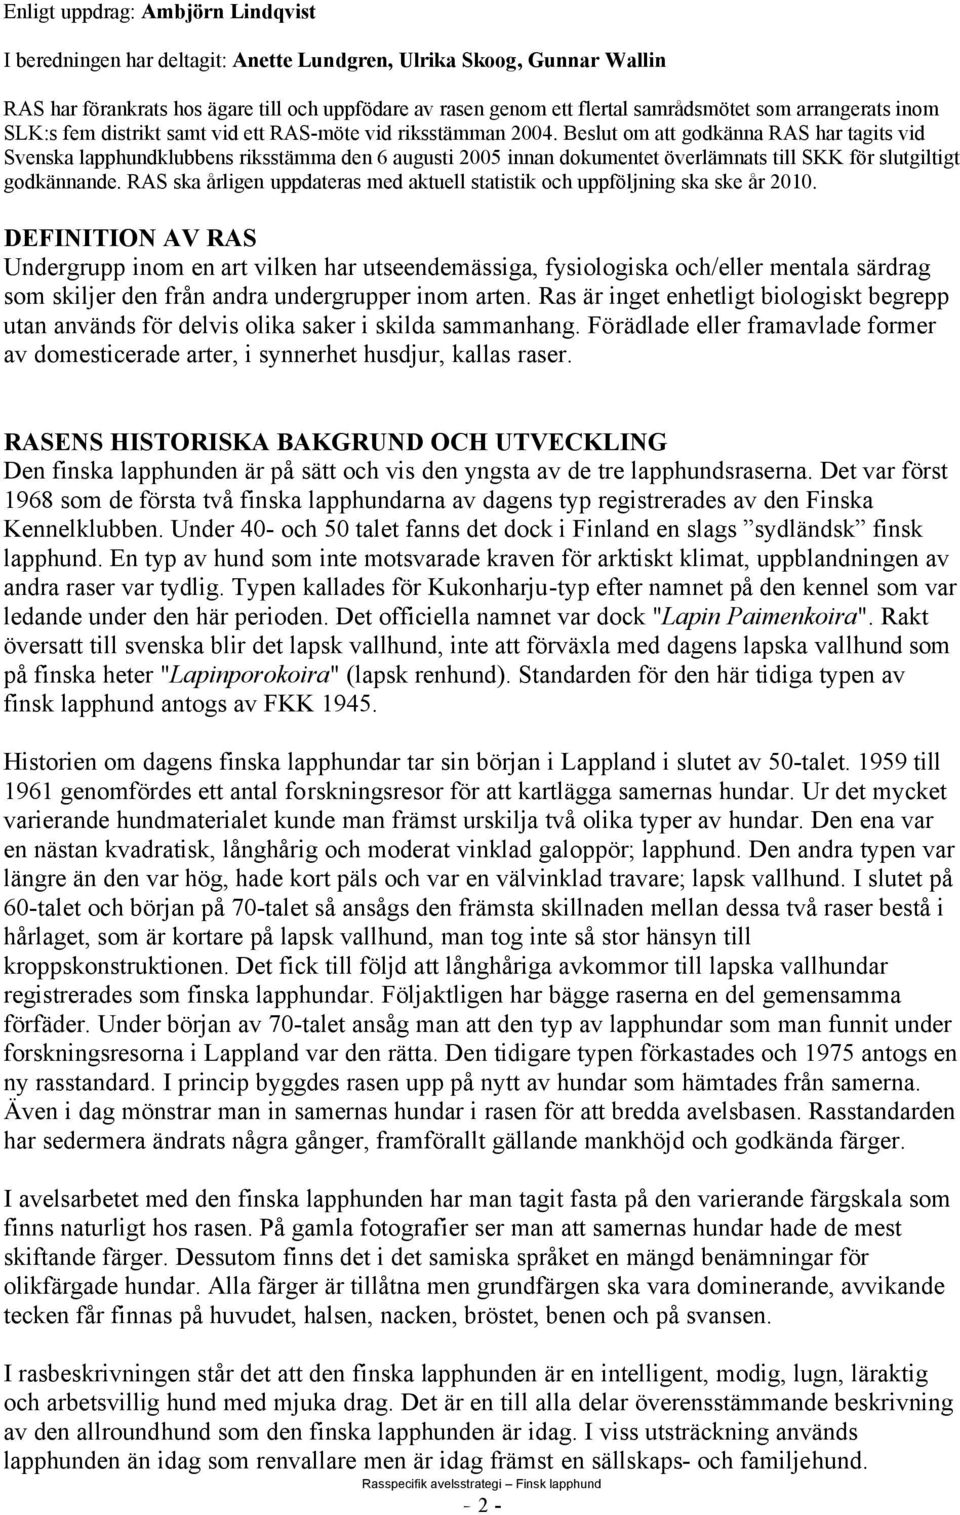 Beslut om att godkänna RAS har tagits vid Svenska lapphundklubbens riksstämma den 6 augusti 2005 innan dokumentet överlämnats till SKK för slutgiltigt godkännande.